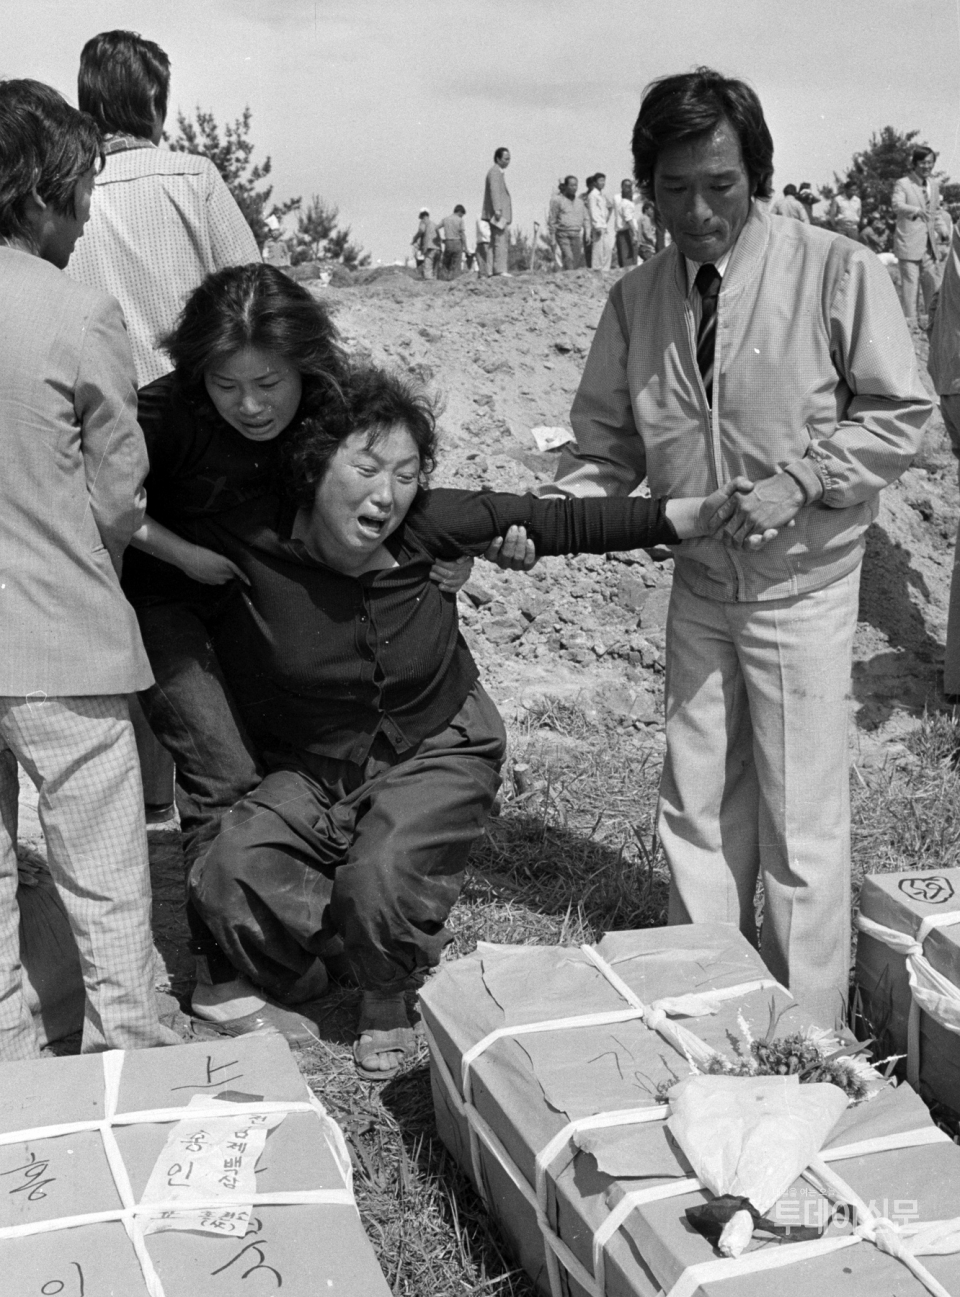 5·18민주화운동 과정에서 광주 금남로에서 계엄군의 총을 맞고 사망한 김완봉(당시 15세) 군의 관과 오열하는 어머니 ⓒ뉴시스